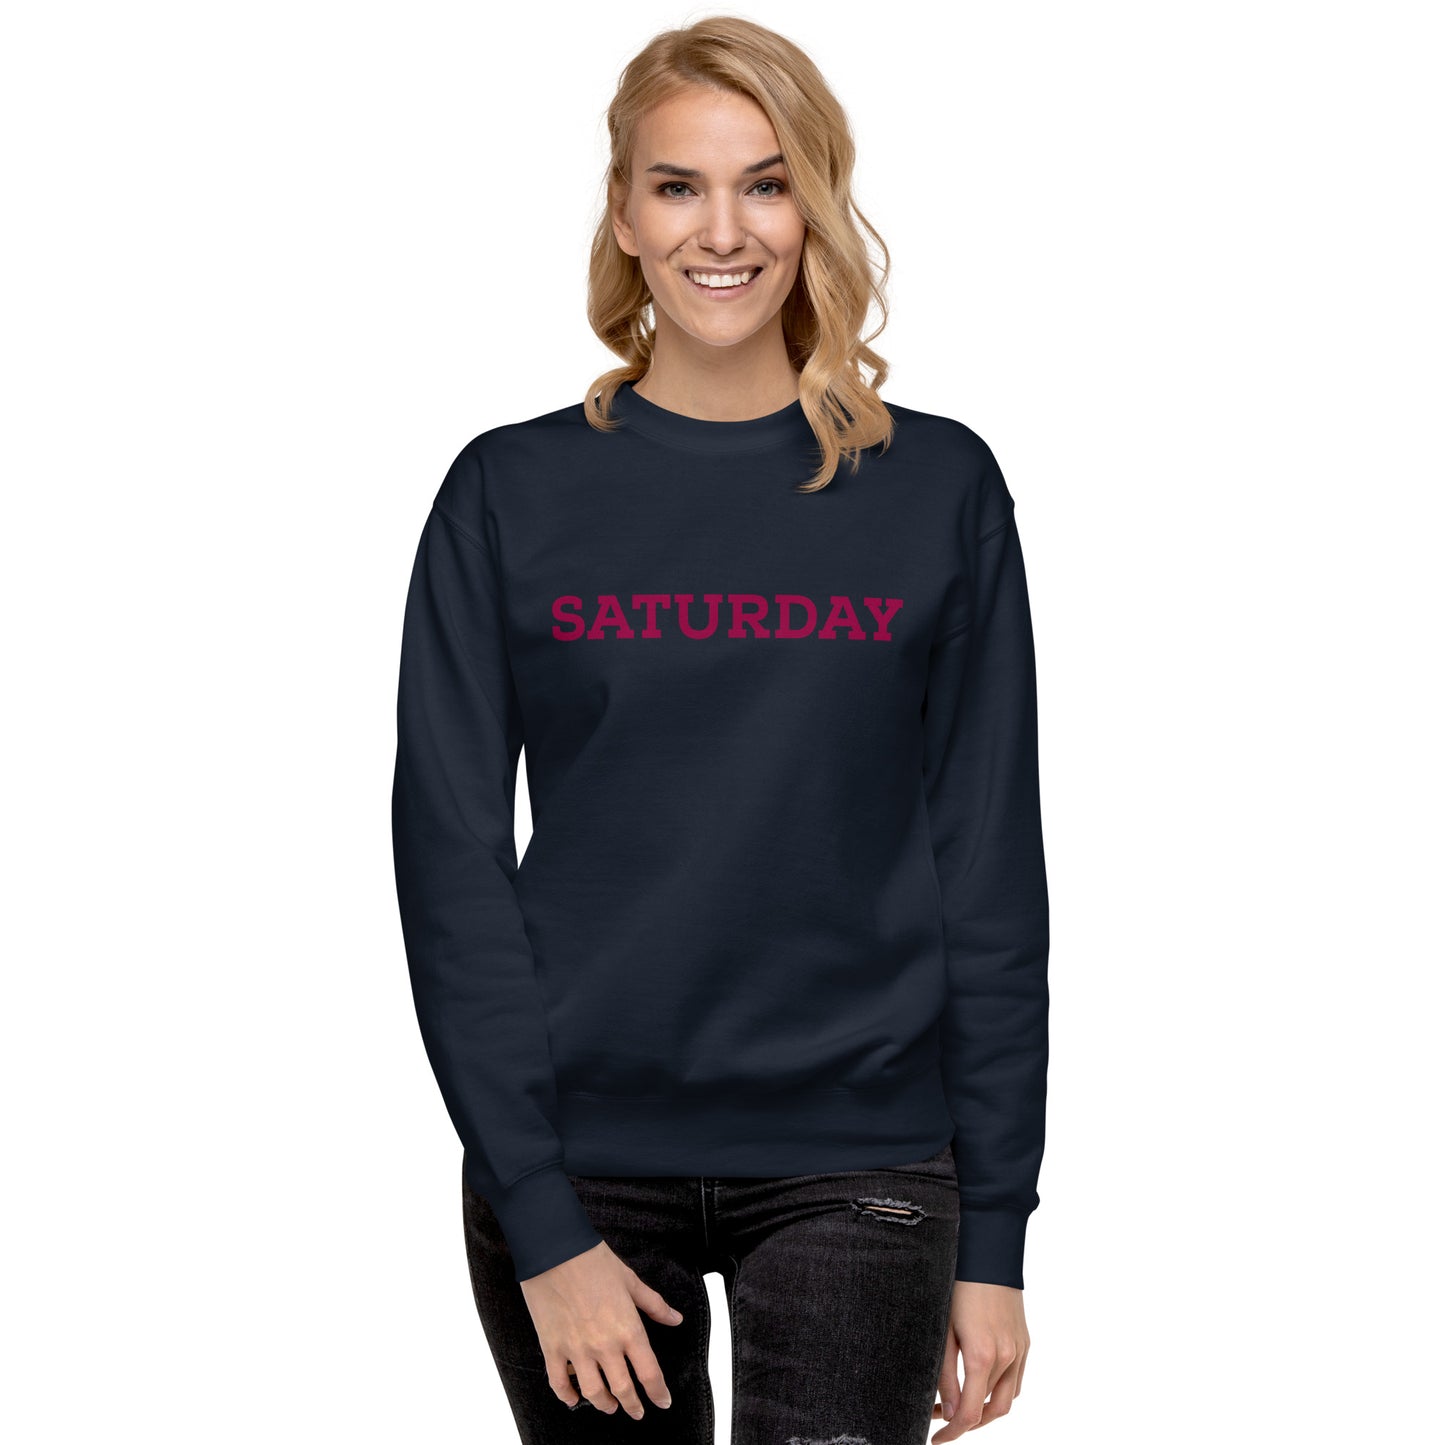 Saturday Unisex Premium Sweatshirt